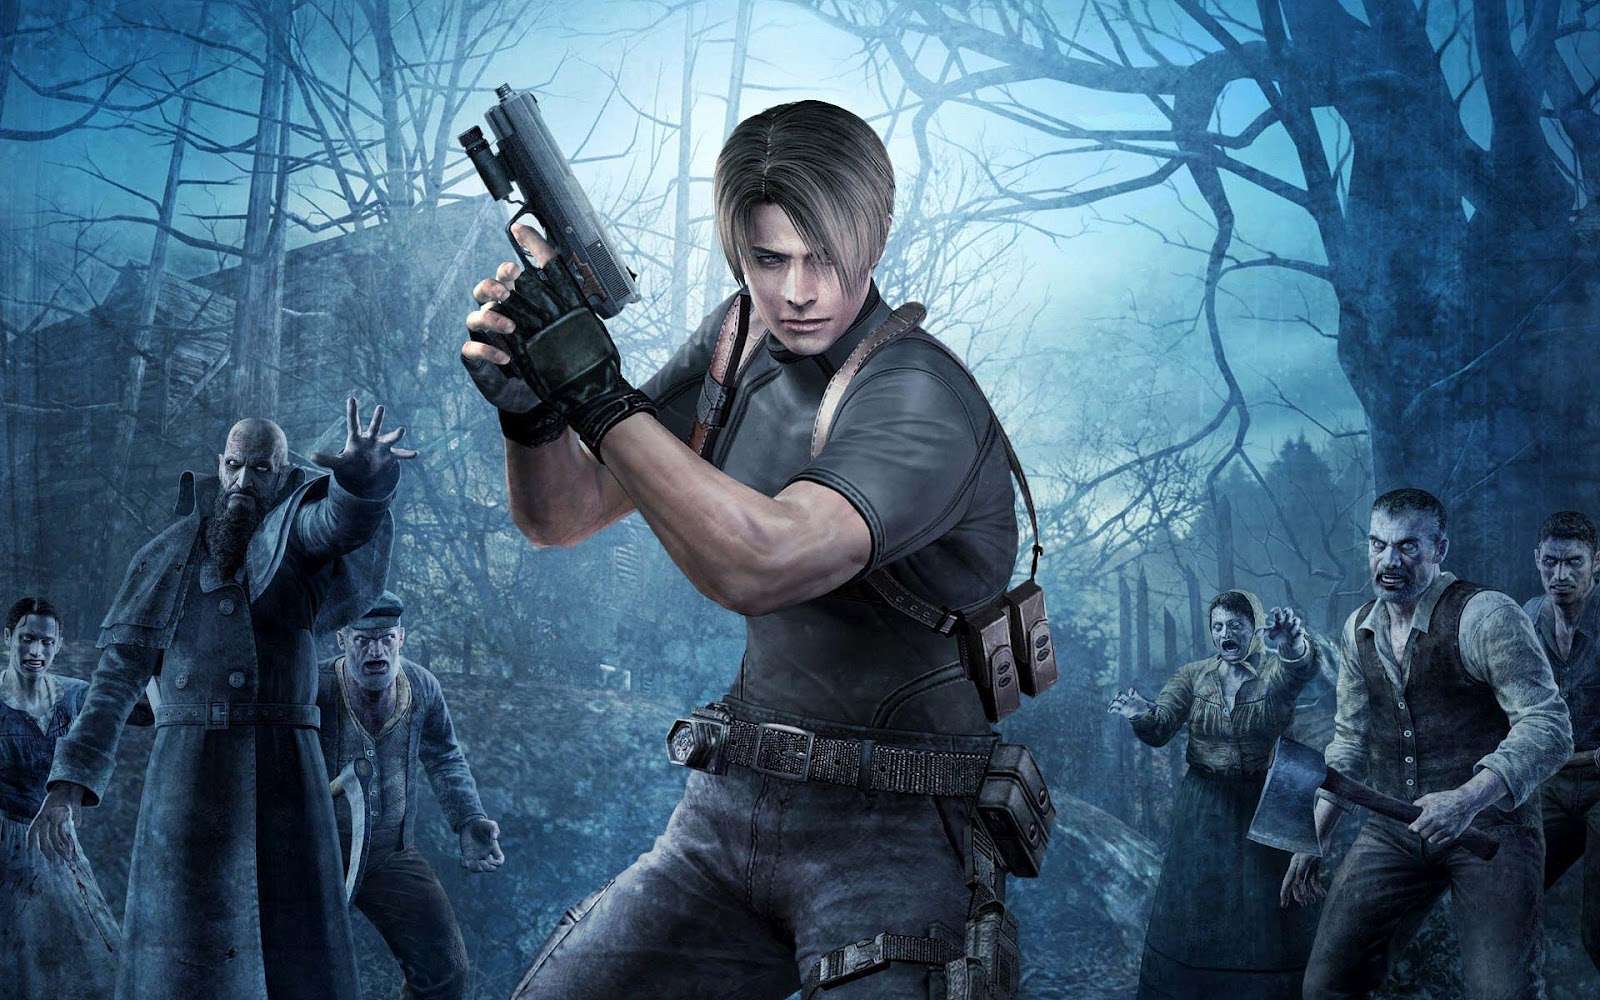 Inwazja marki Resident Evil na Switch. Capcom zapowiada remastery